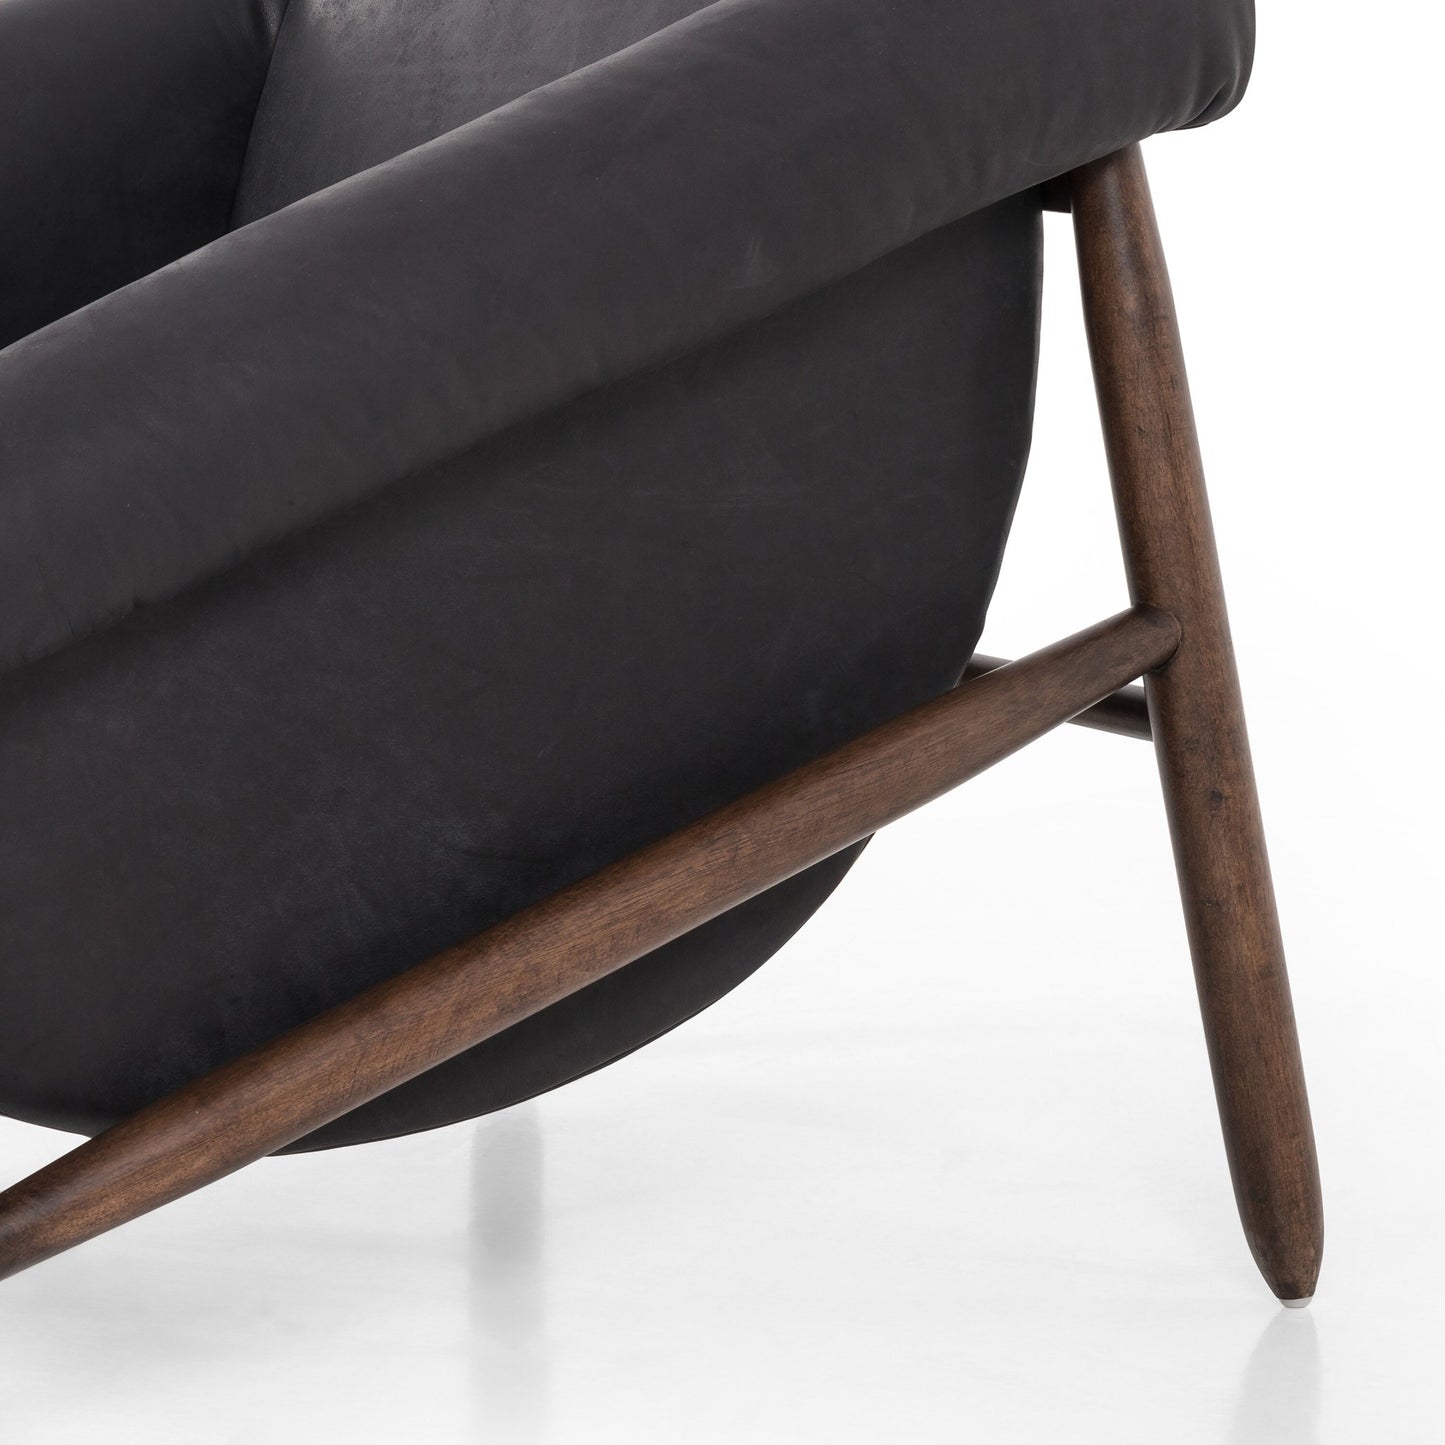 Reggie chair-heirloom black